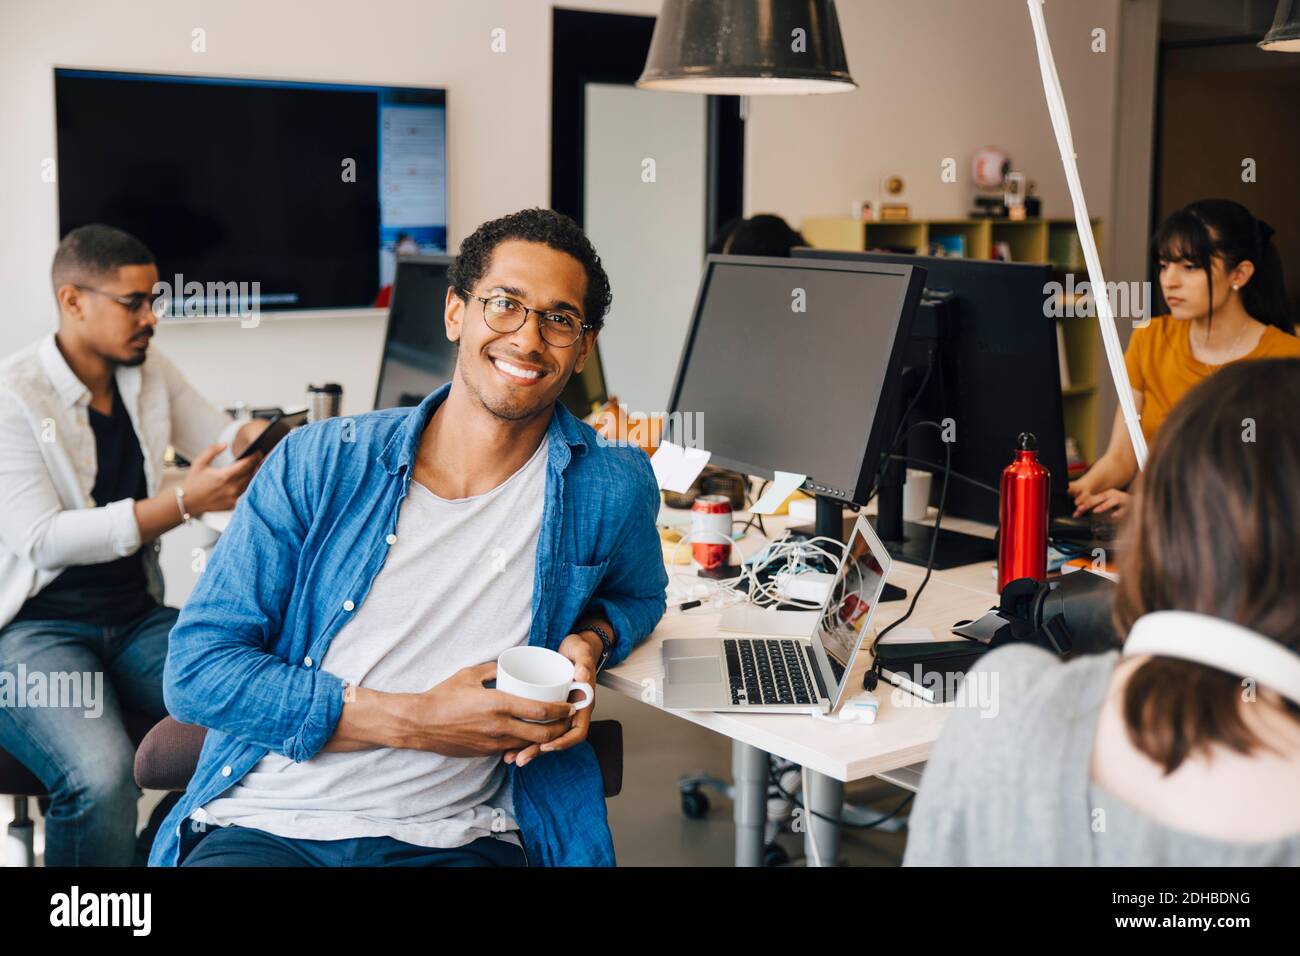 Portrait des männlichen Computerprogrammierers, der von Kollegen am Schreibtisch sitzt Im Büro Stockfoto